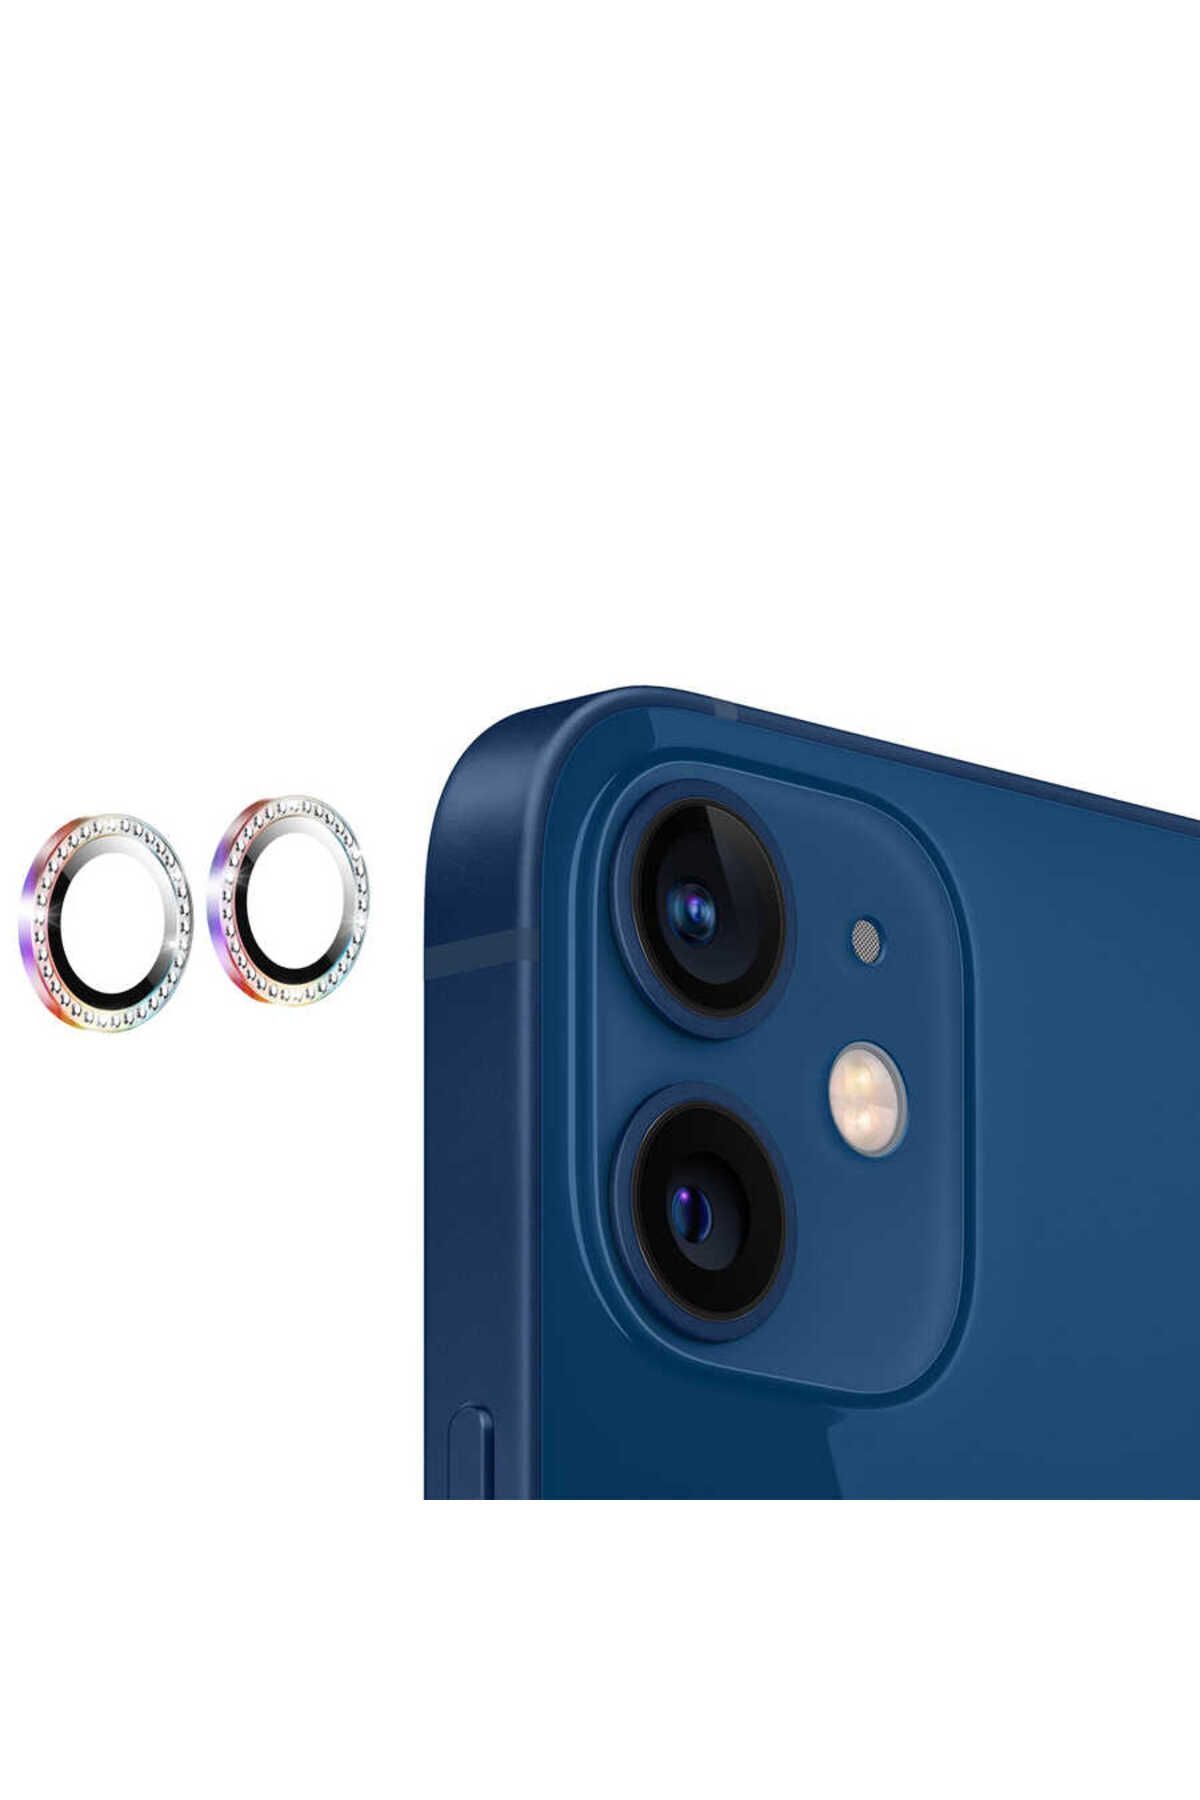 Genel Markalar iPhone 11 Uyumlu Baltazar CL-06 Kamera Lens Koruyucu-Colorful